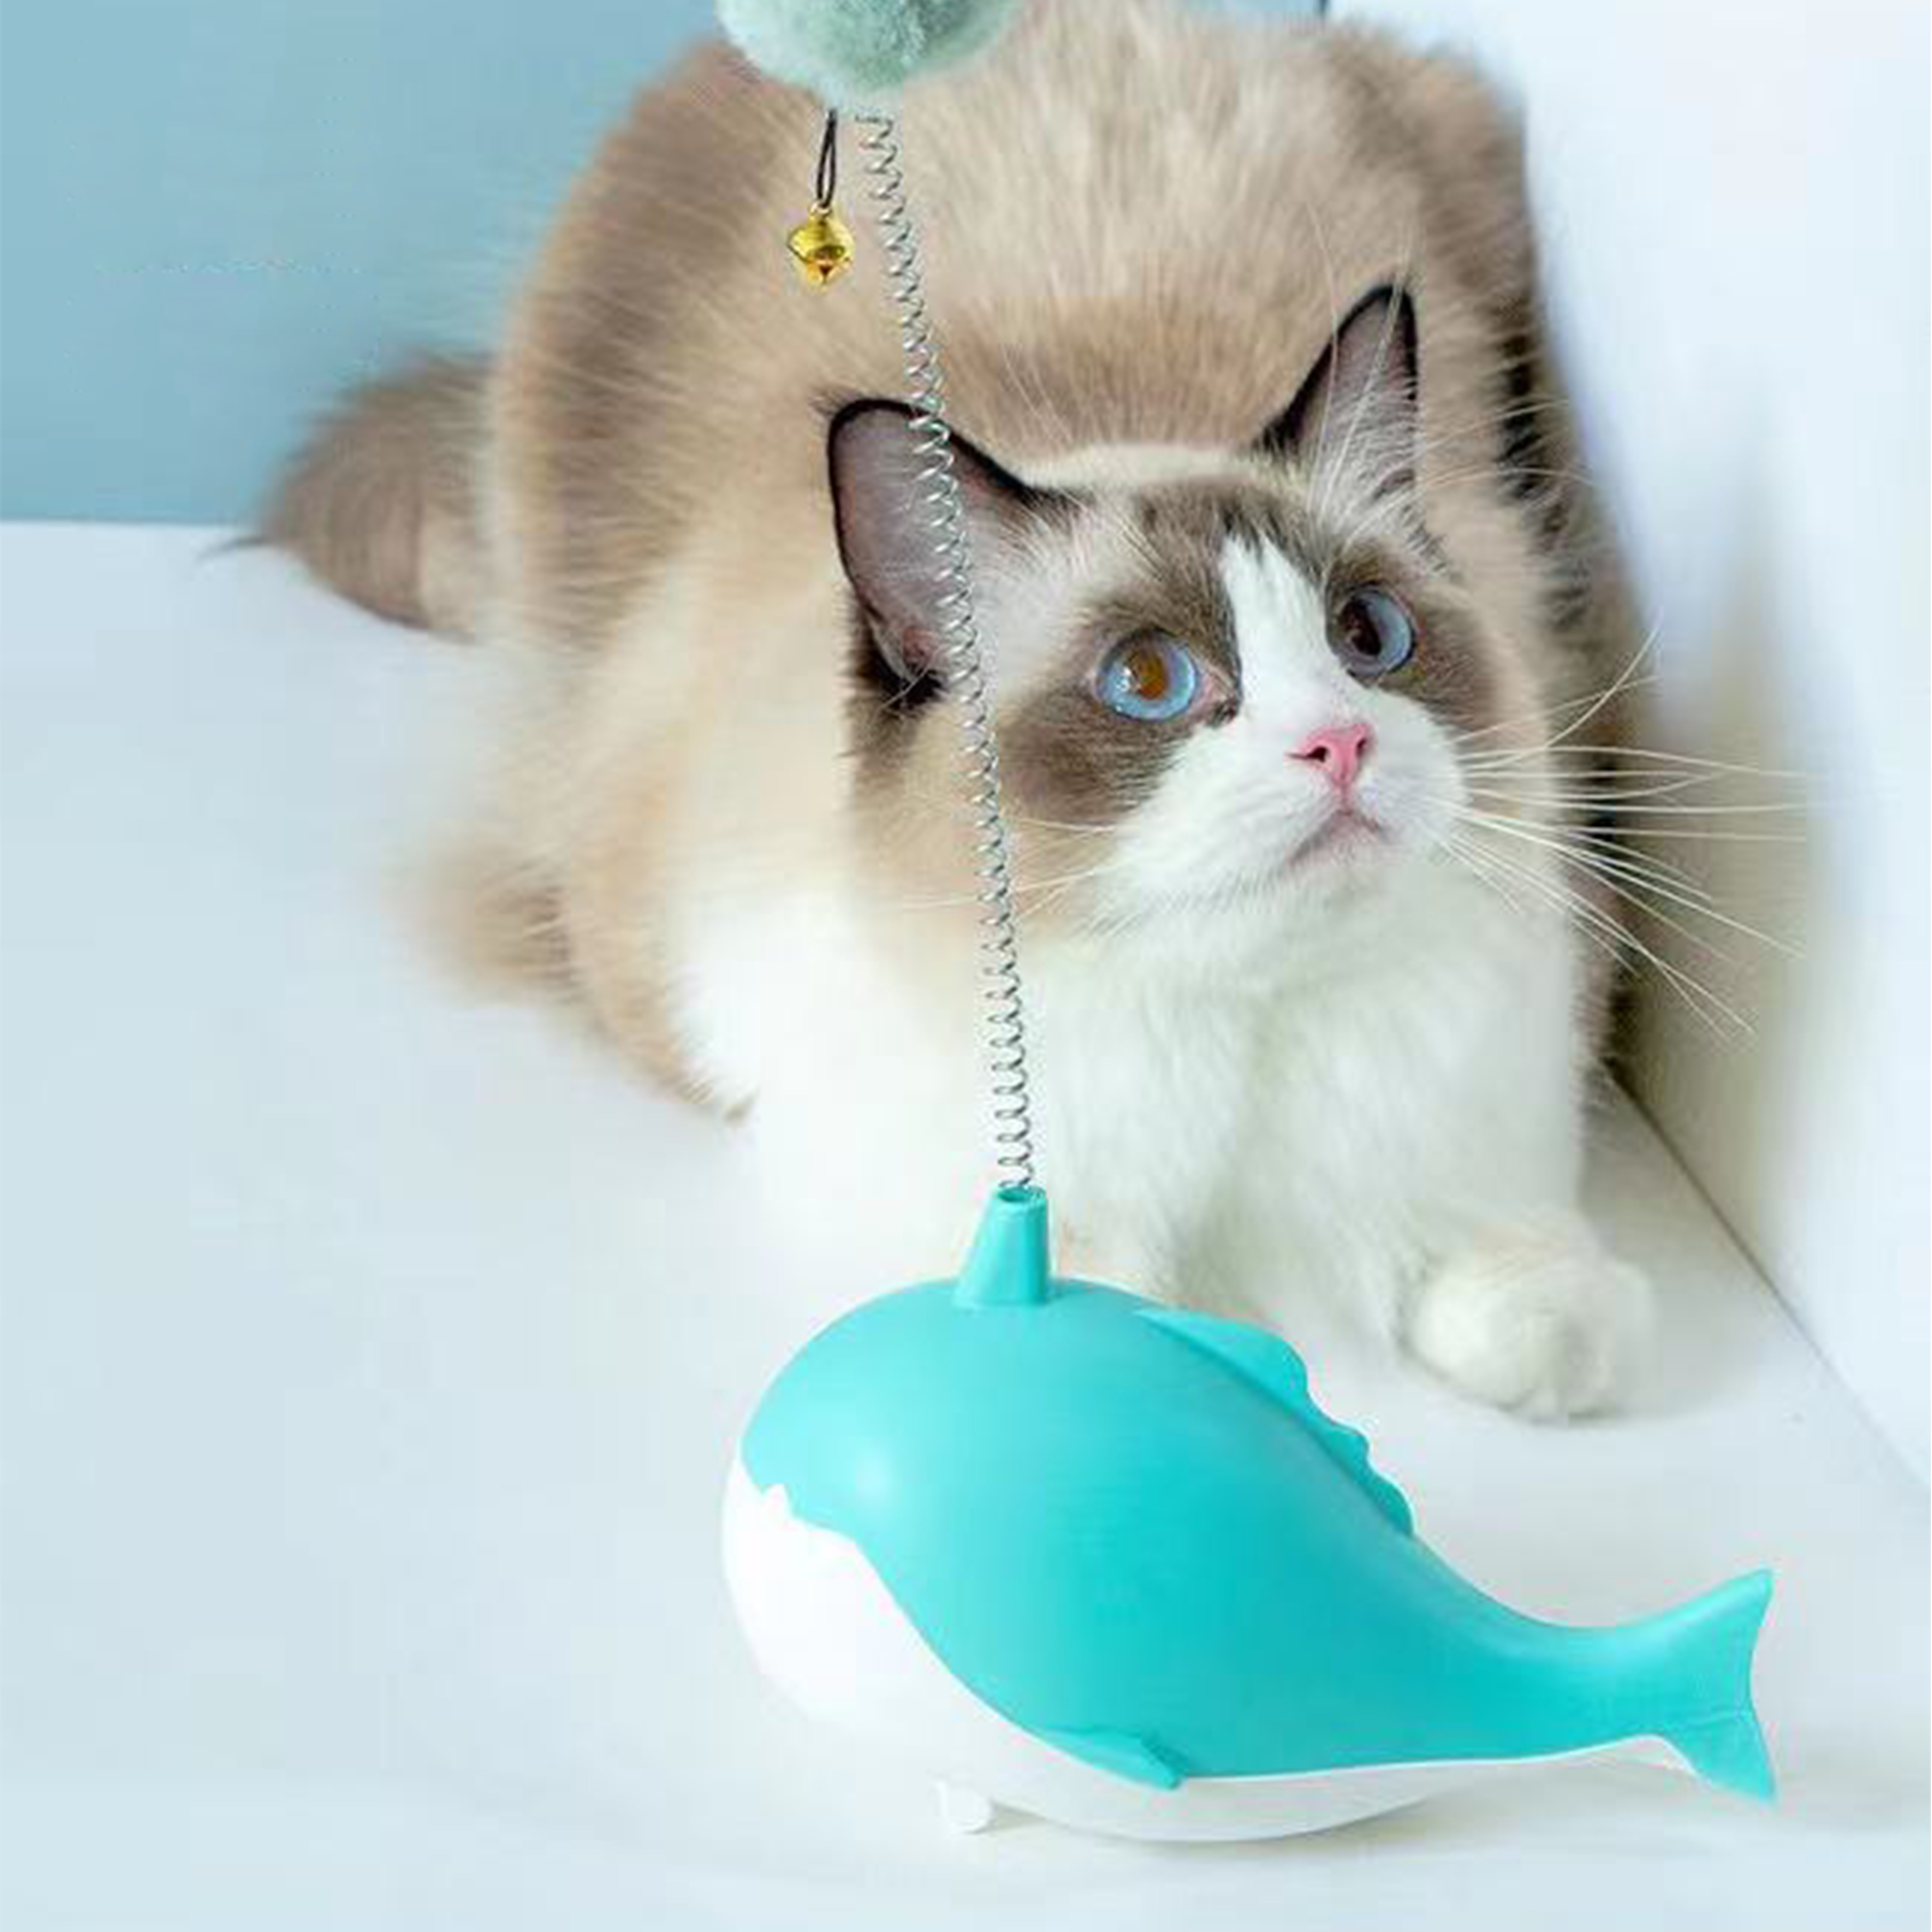 Cat fish toy